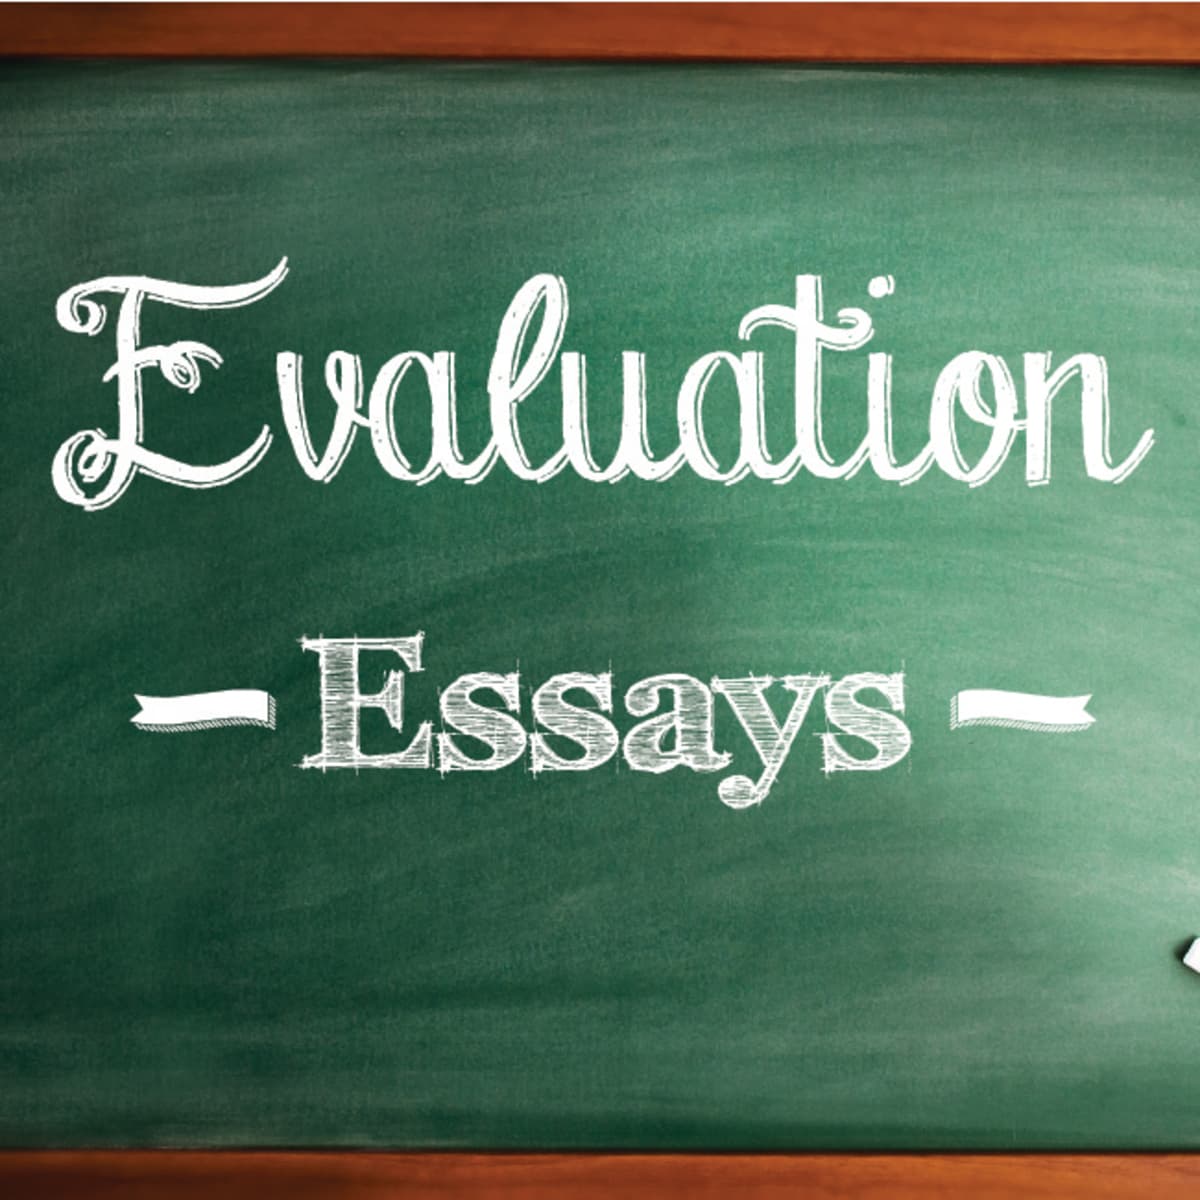 define evaluate essay